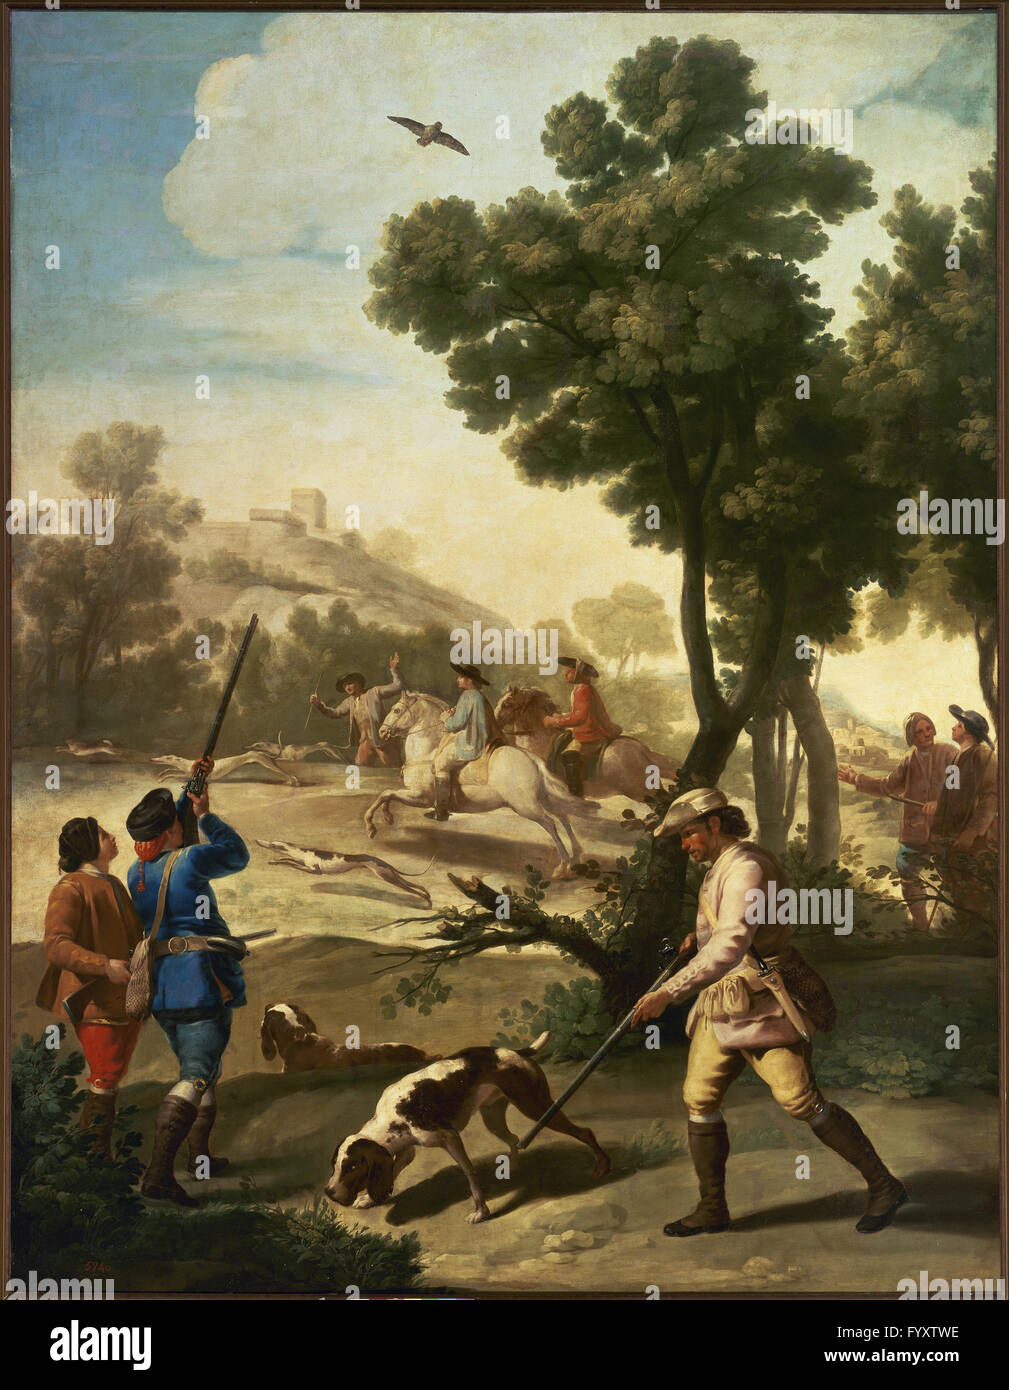 Francisco de Goya y Lucientes (1746-1828). Peintre espagnol. Partie de chasse, 1775. Musée du Prado. Madrid. L'Espagne. Banque D'Images